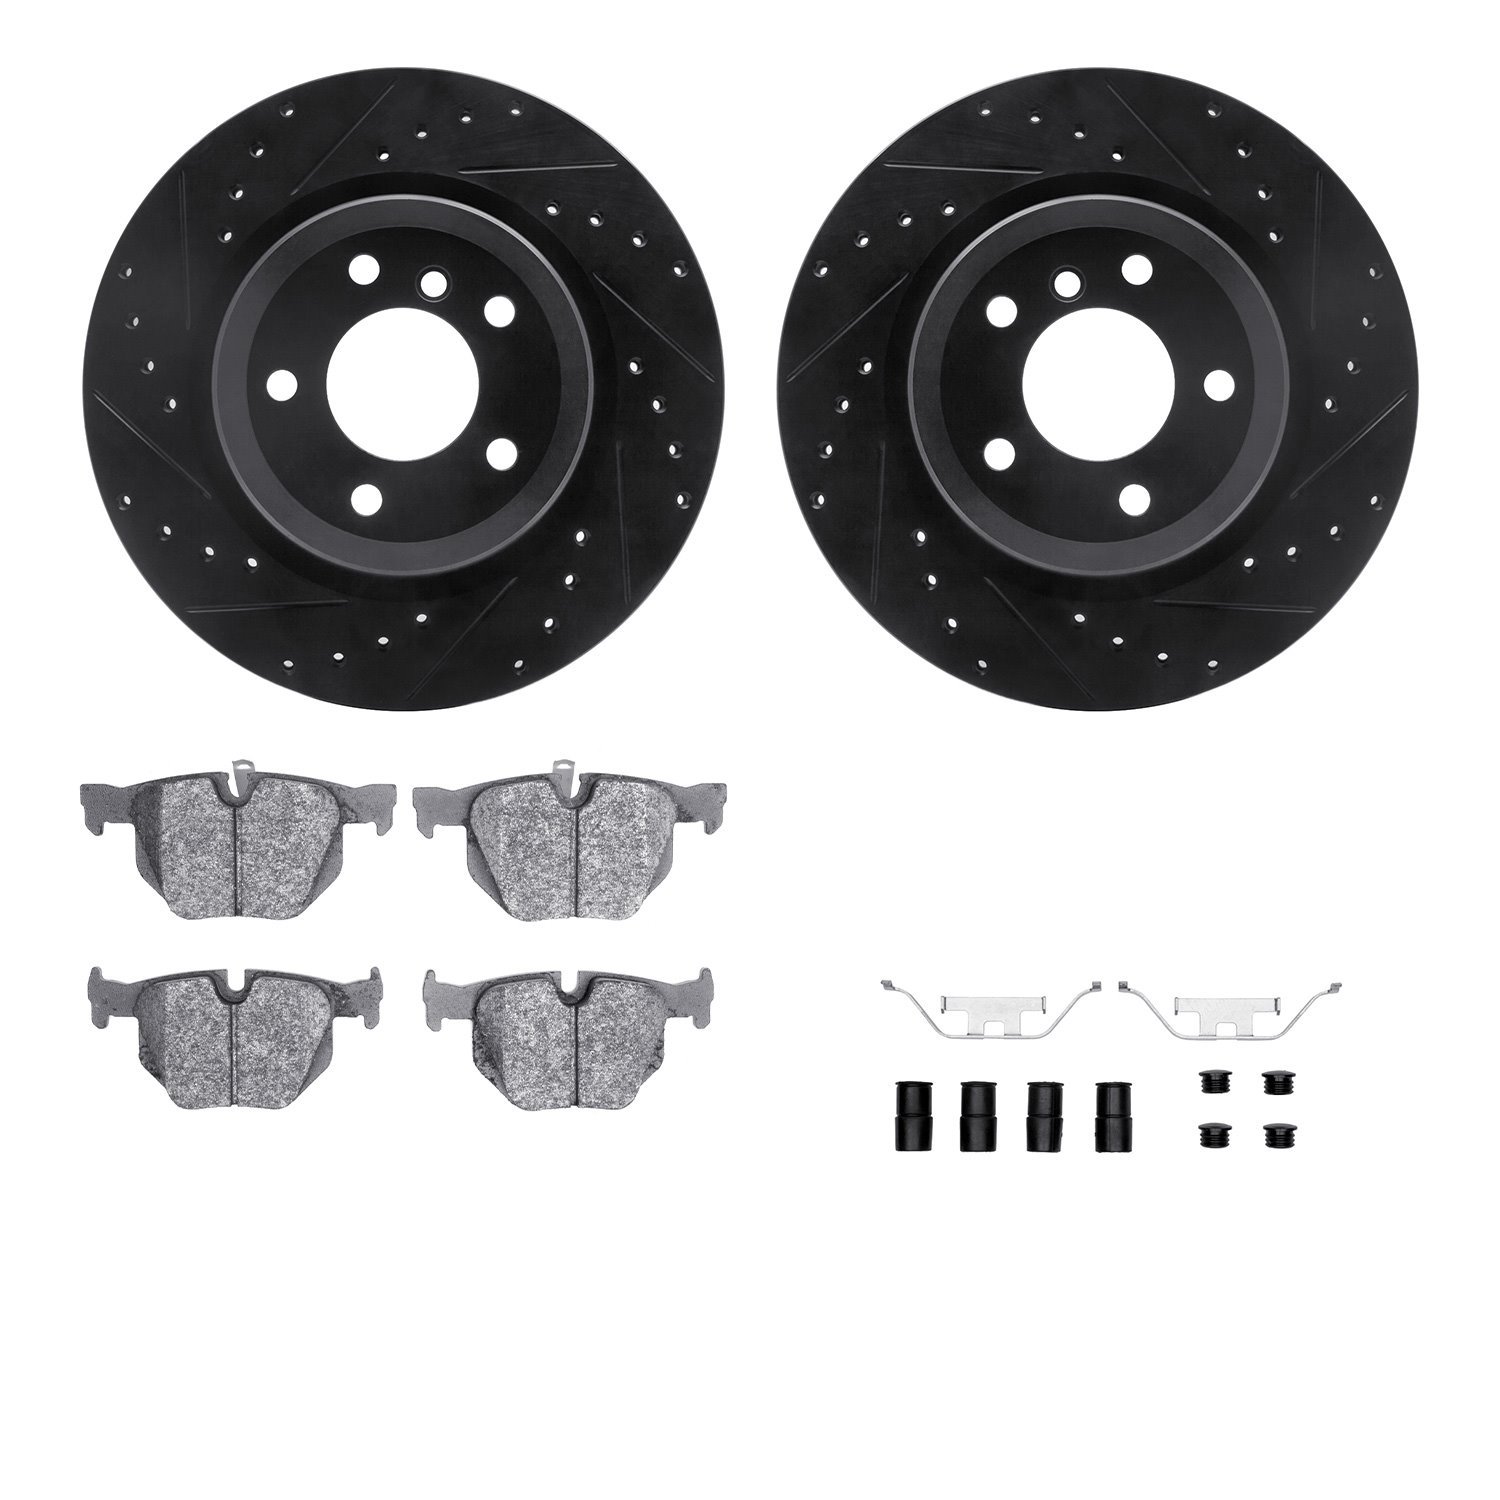 8612-31067 Drilled/Slotted Brake Rotors w/5000 Euro Ceramic Brake Pads Kit & Hardware [Black], 2006-2015 BMW, Position: Rear